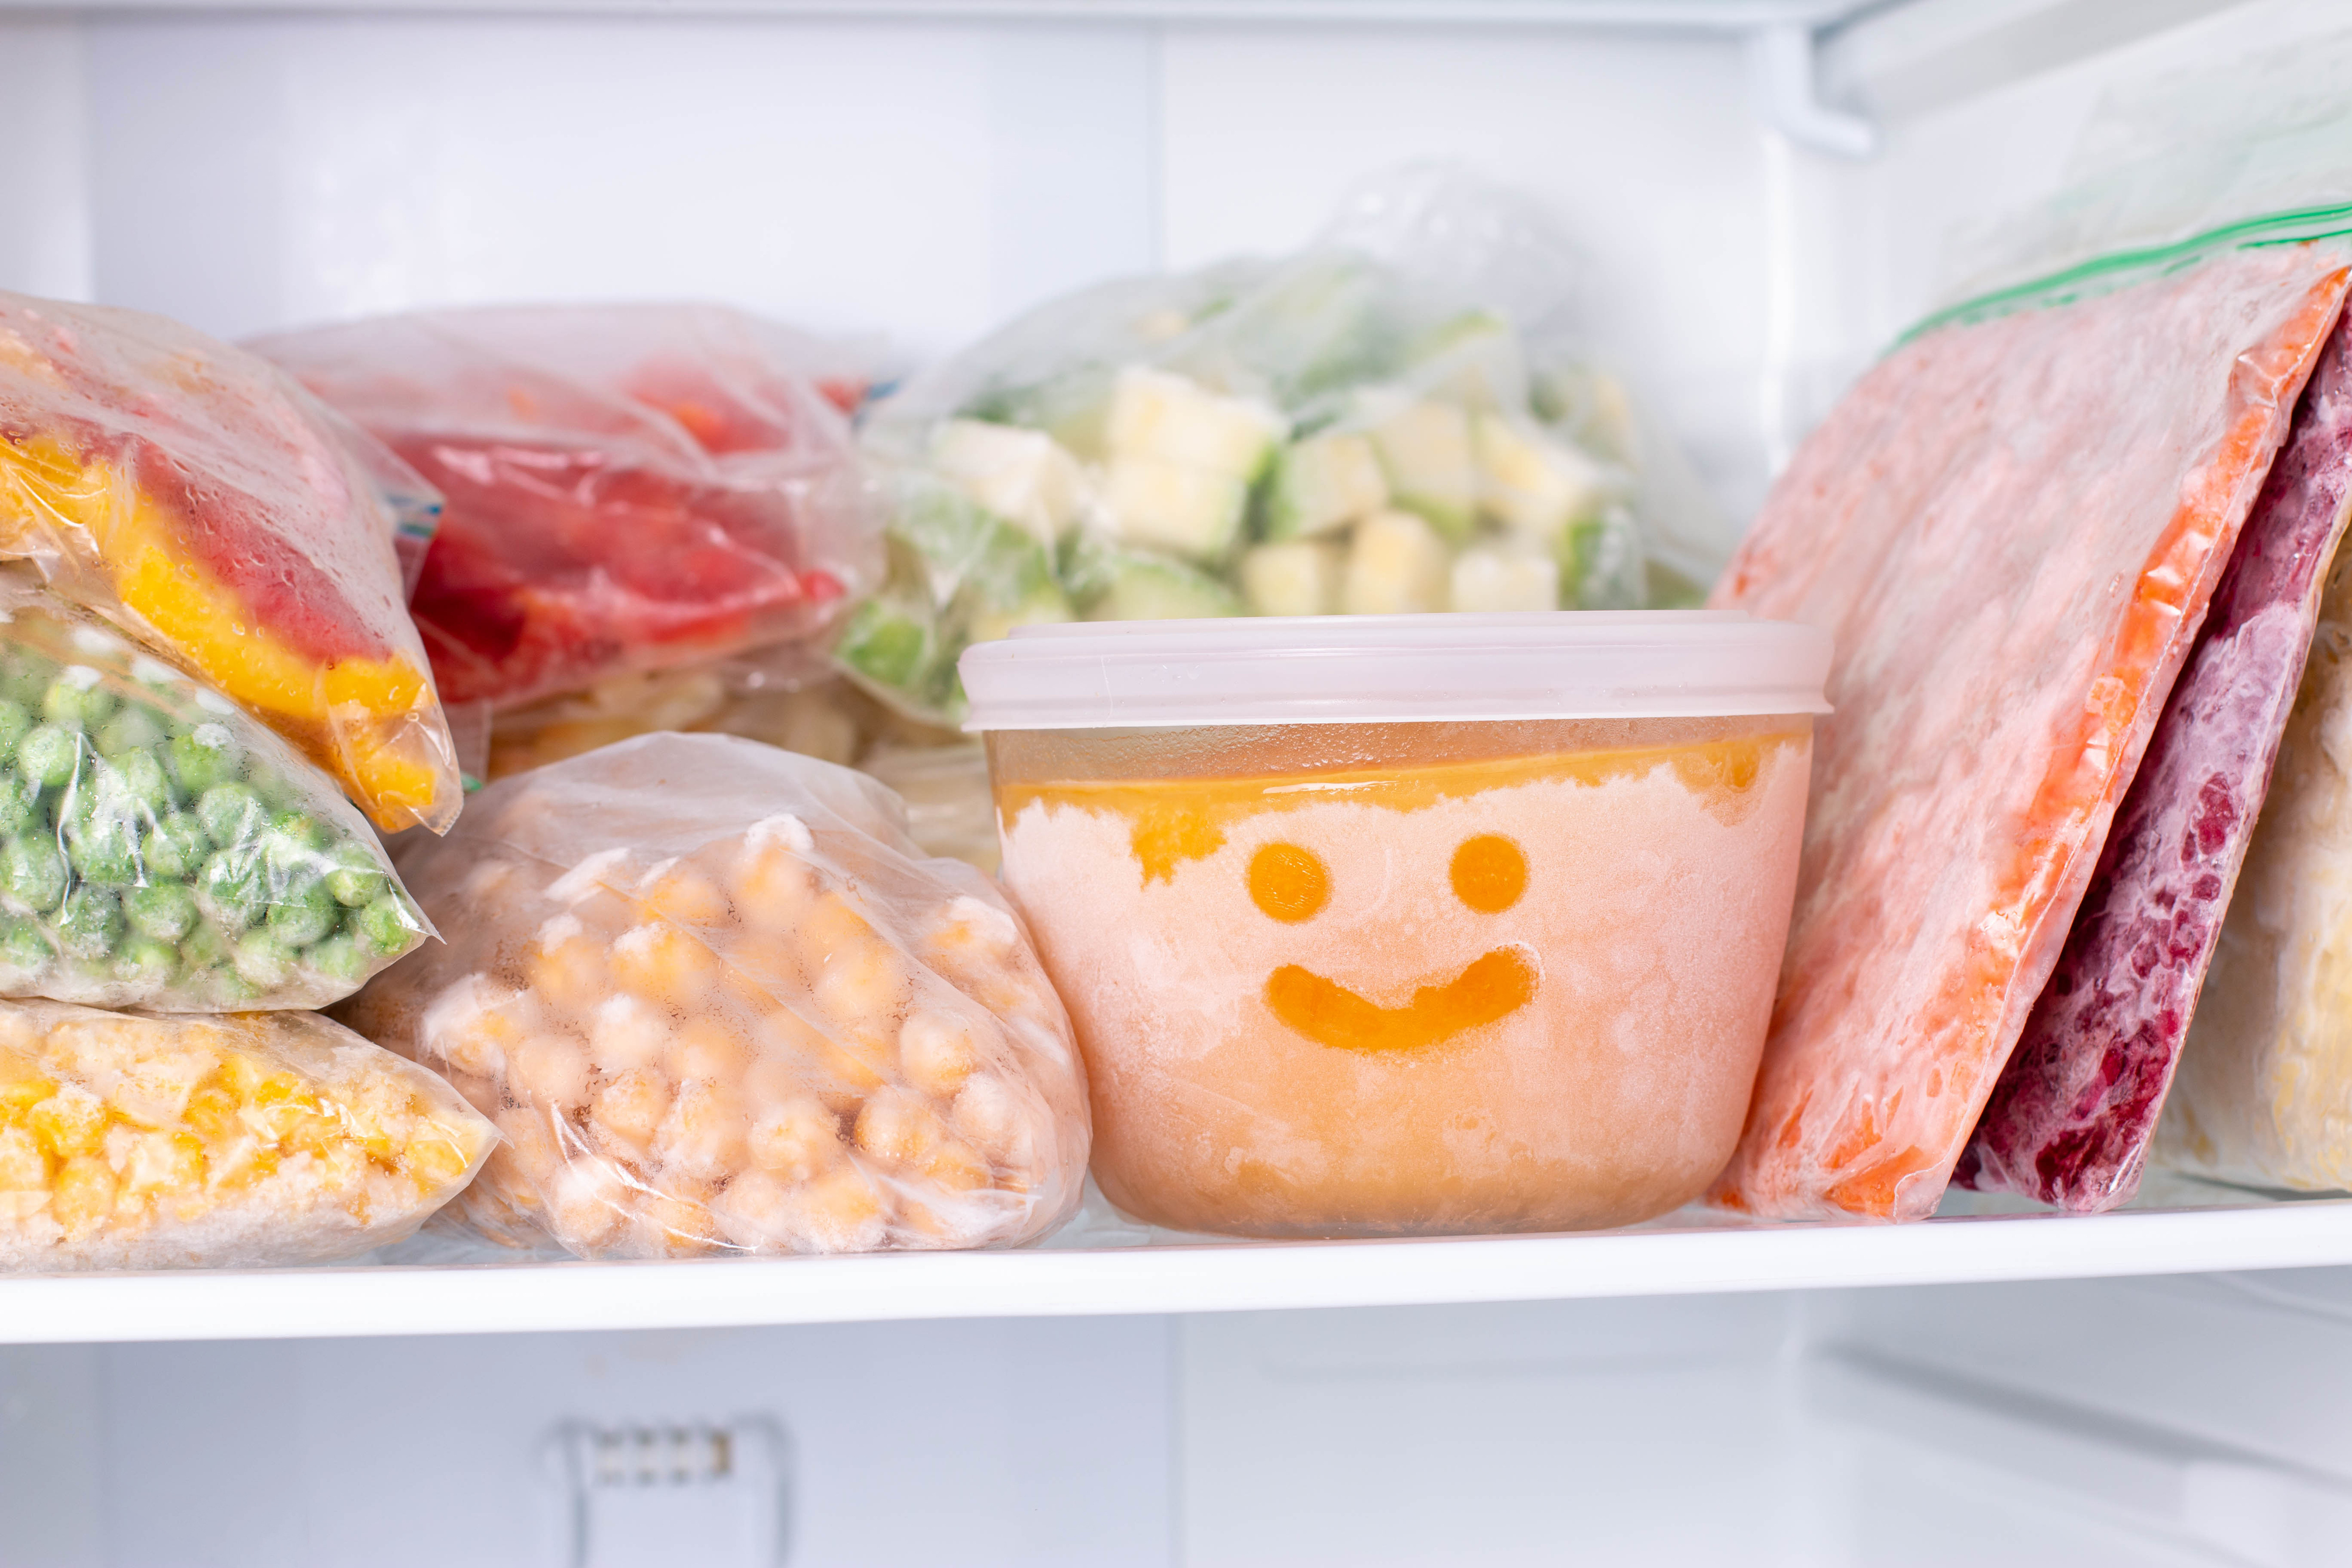 Los alimentos que guardamos en el congelador conviene tenerlos marcados y organizados.